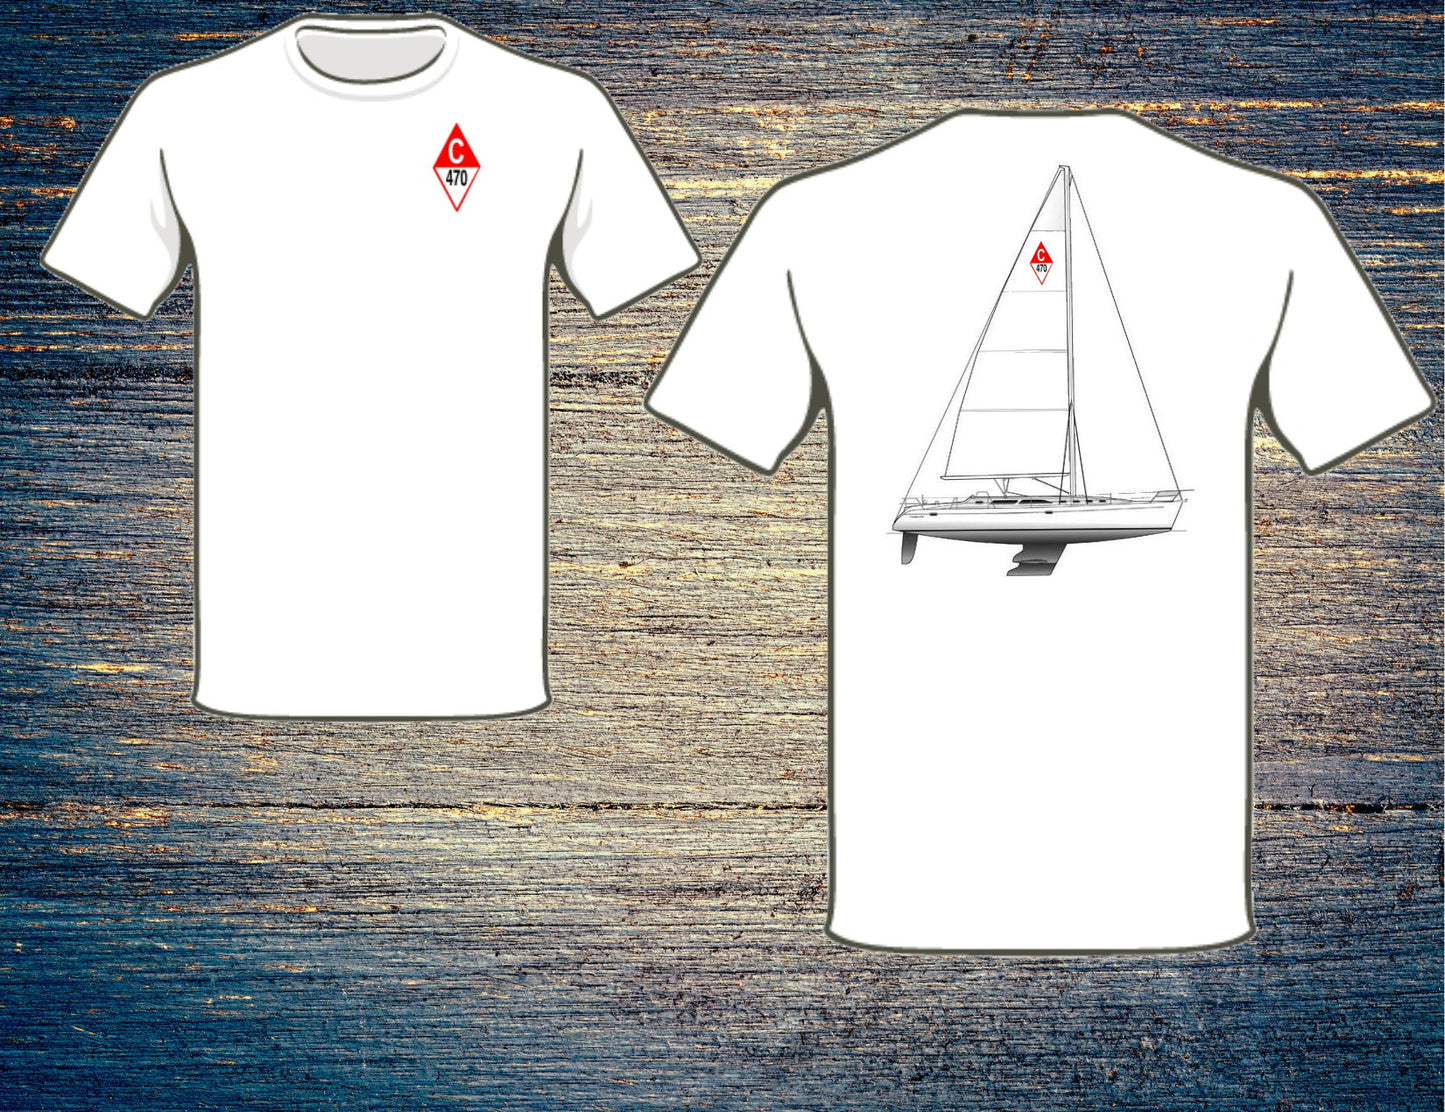 Catalina 470 Sailboat T-Shirt